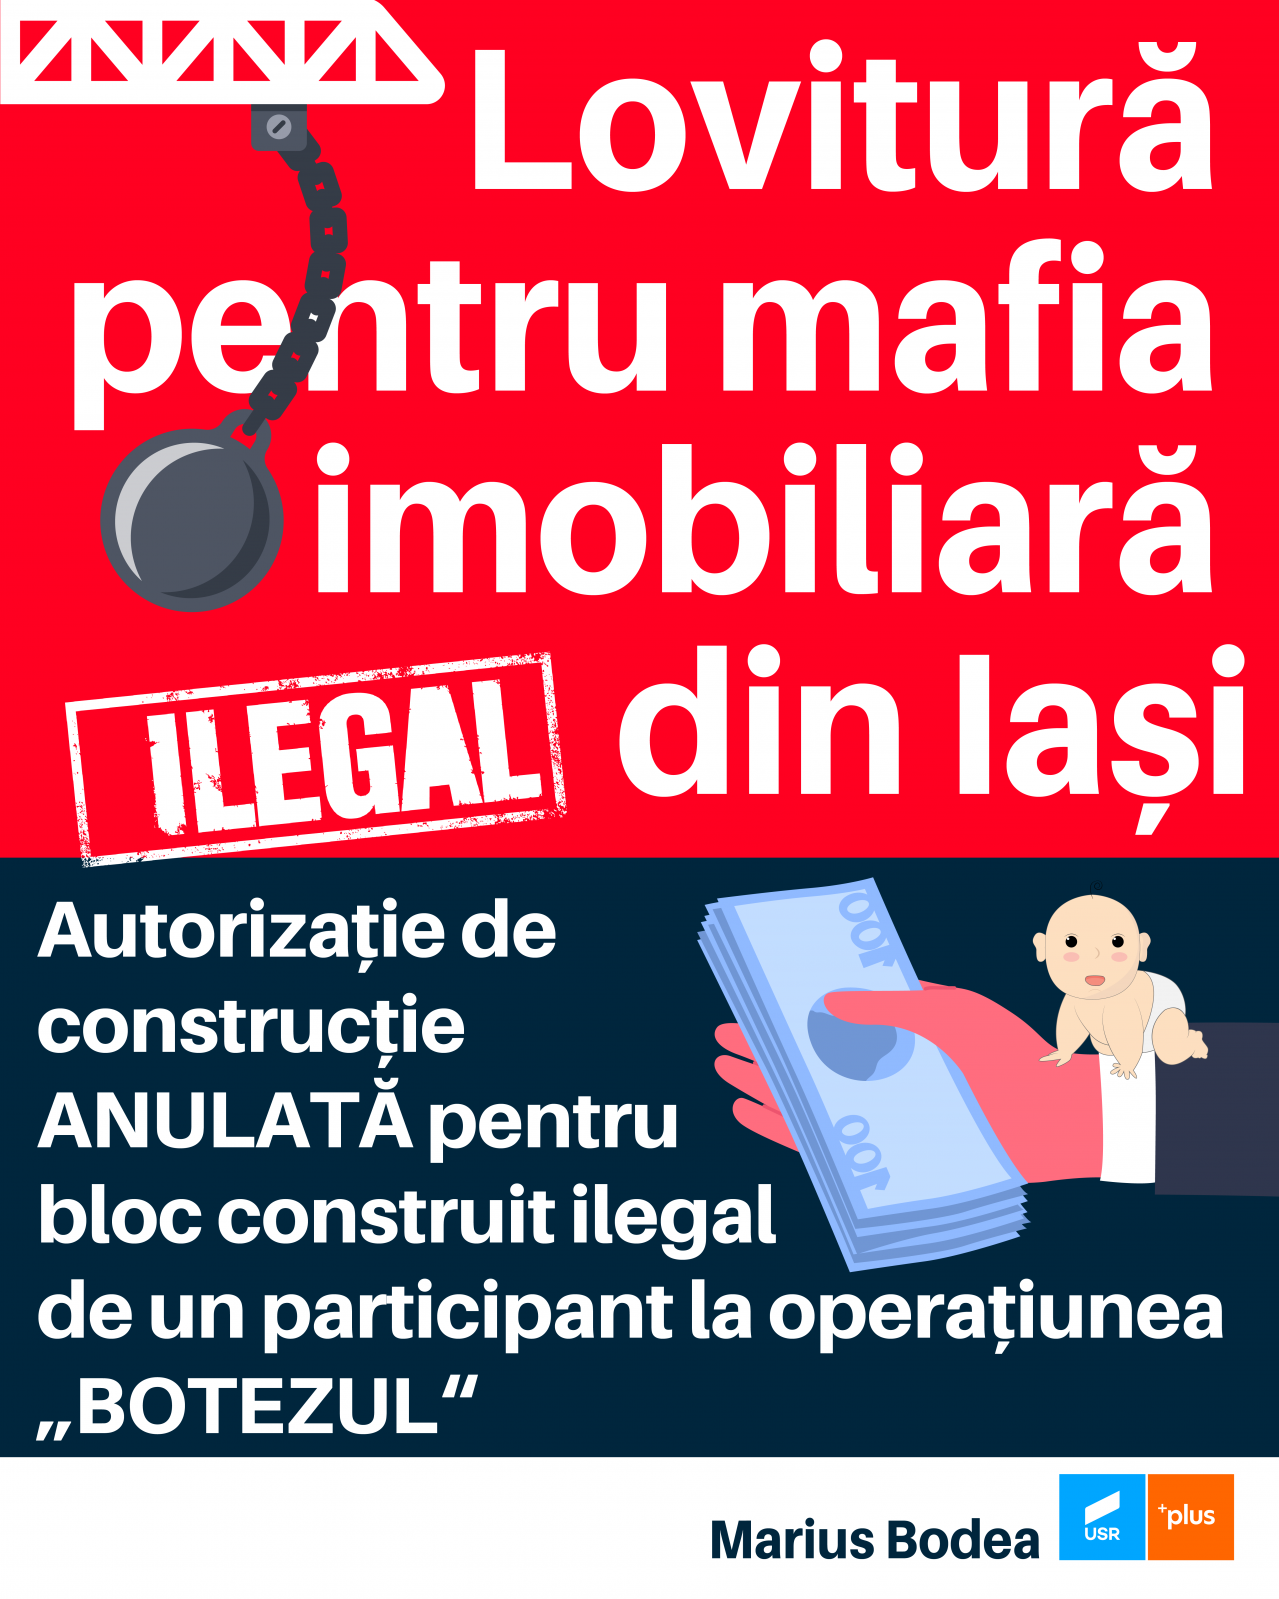  Marius Bodea (deputat USR): Lovitură pentru mafia imobiliară din Iași! Instanța a anulat autorizația pentru un bloc construit ilegal de unul dintre sponsorii imobiliari ai primarului Chirica (P)